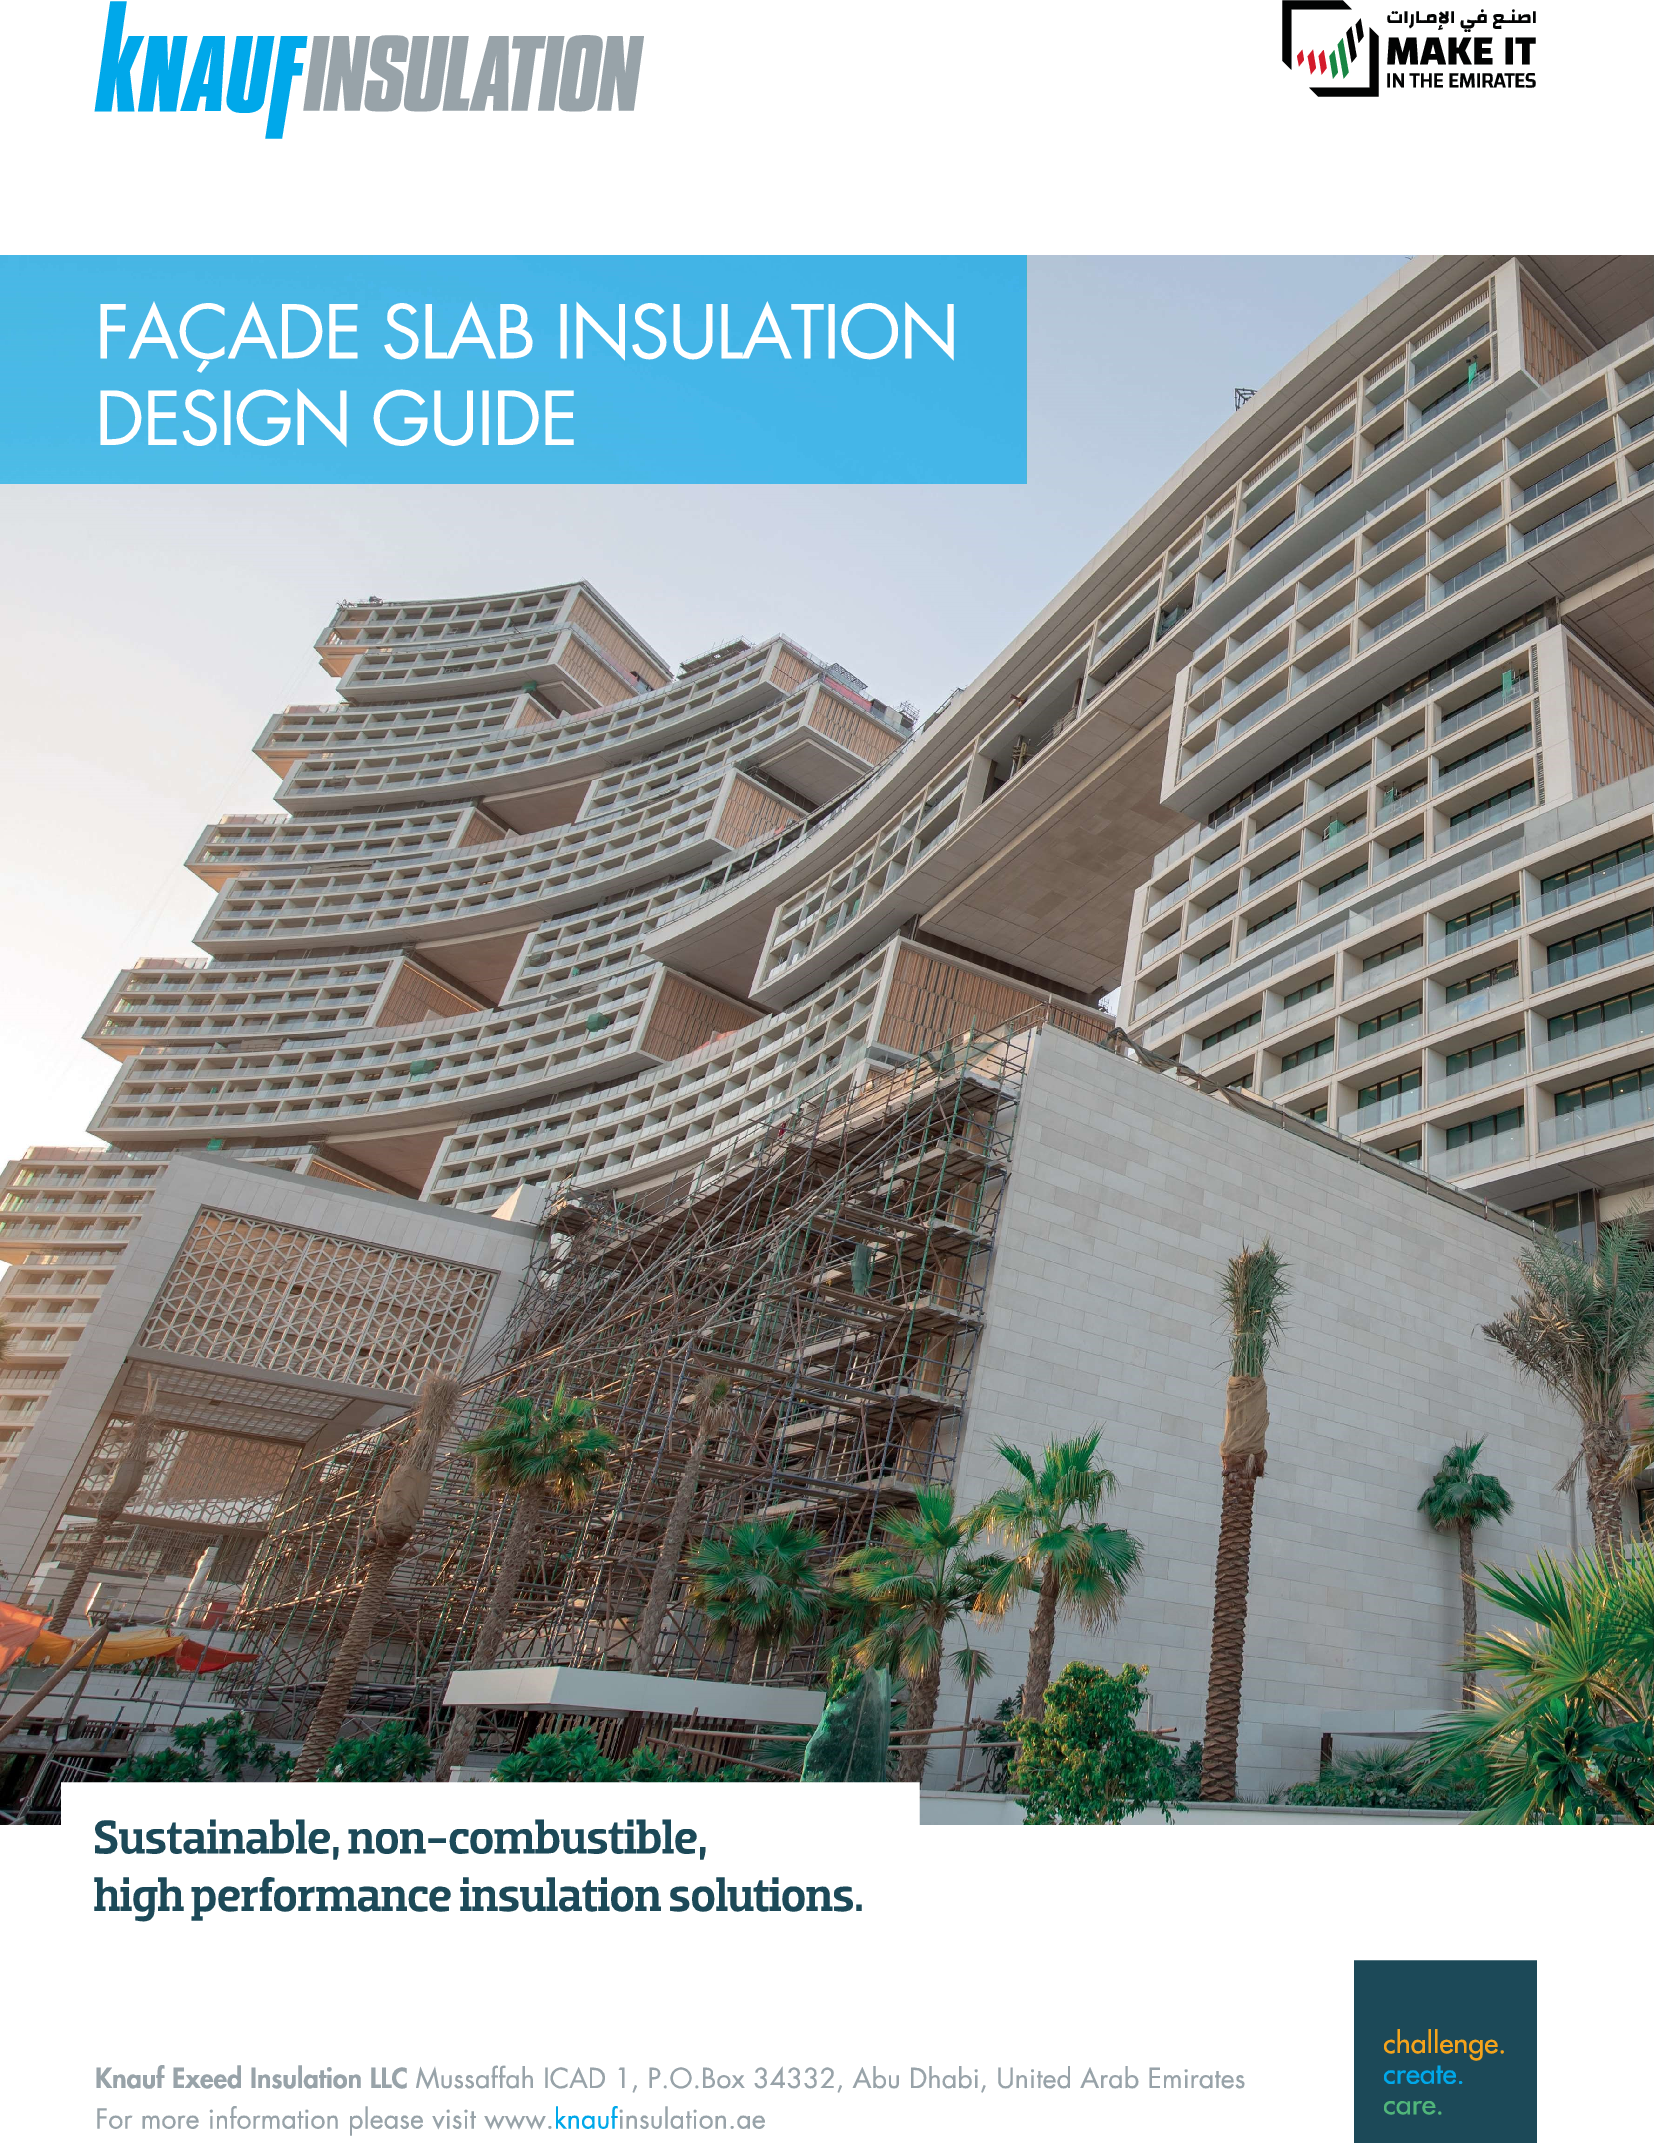 Facade Insulation Design Guide